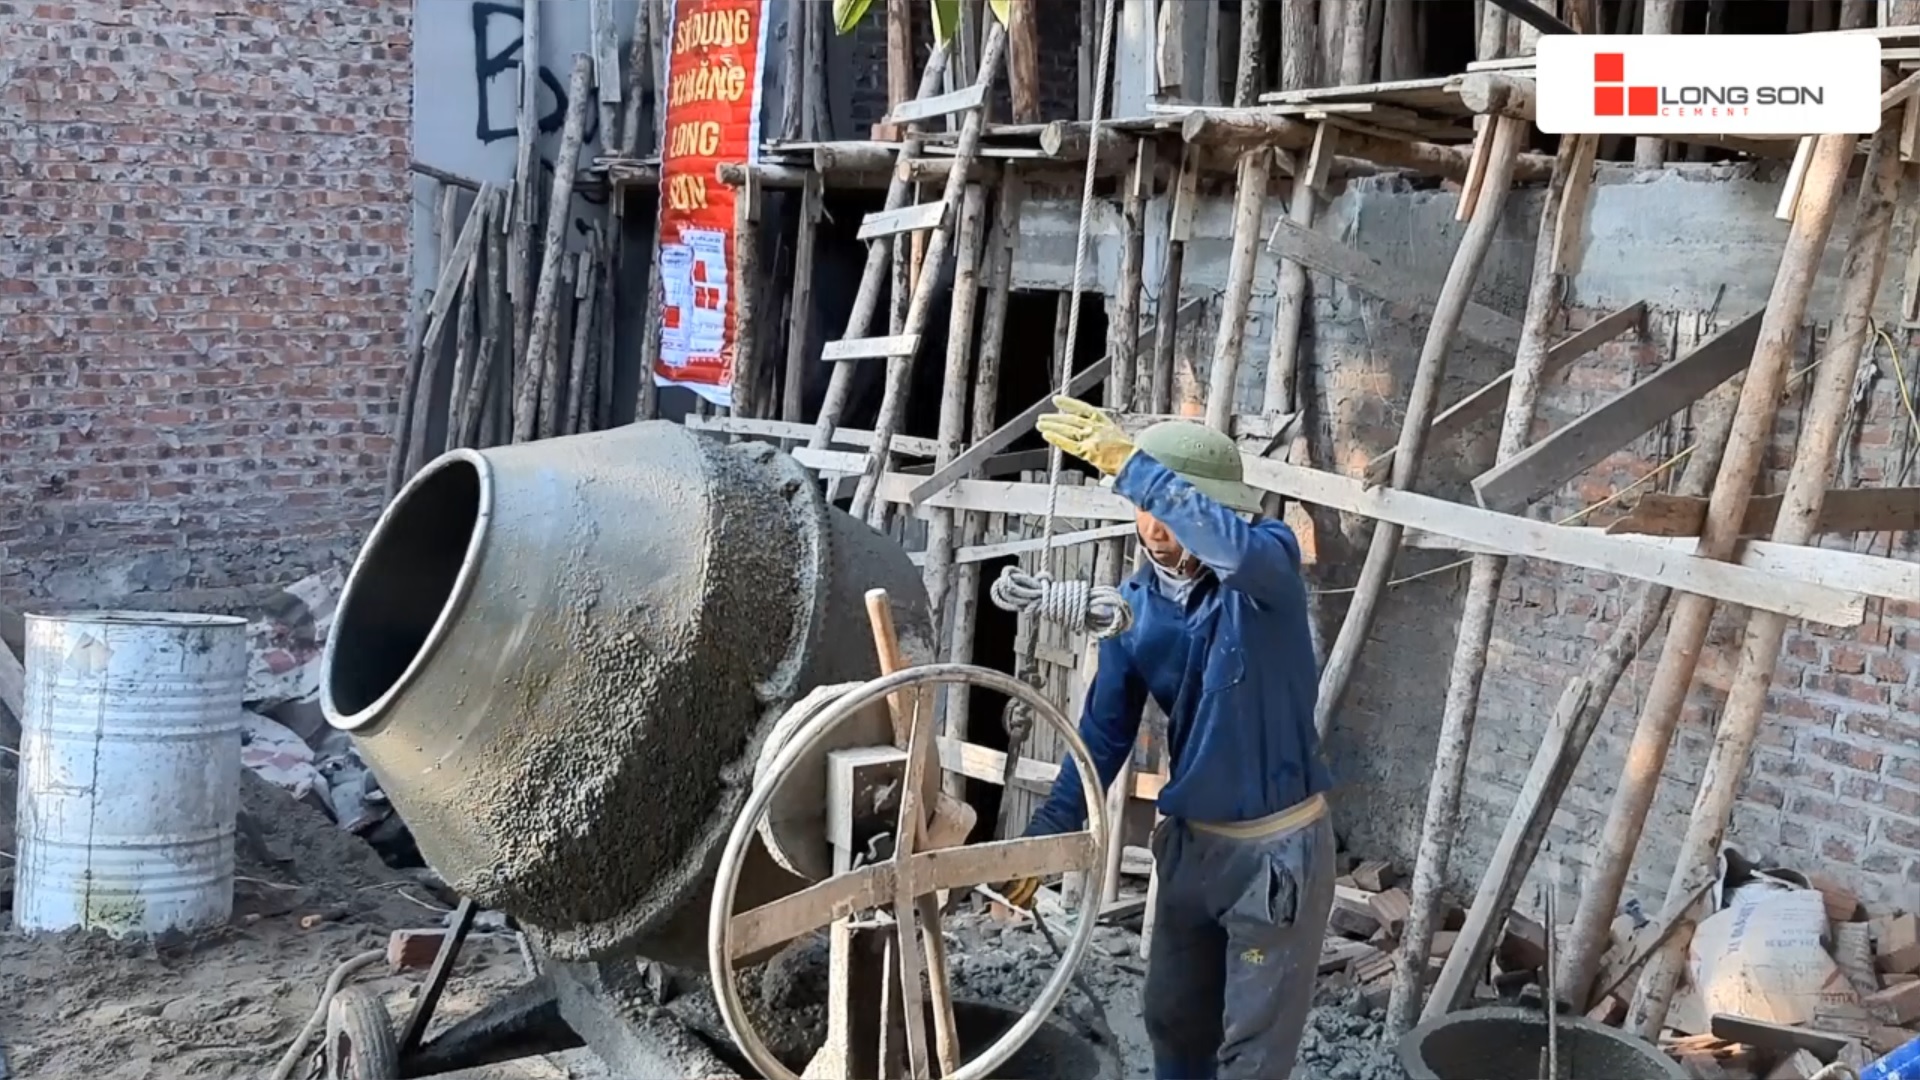 Phóng sự công trình sử dụng Xi măng Long Sơn tại Bắc Giang 11.12.2019